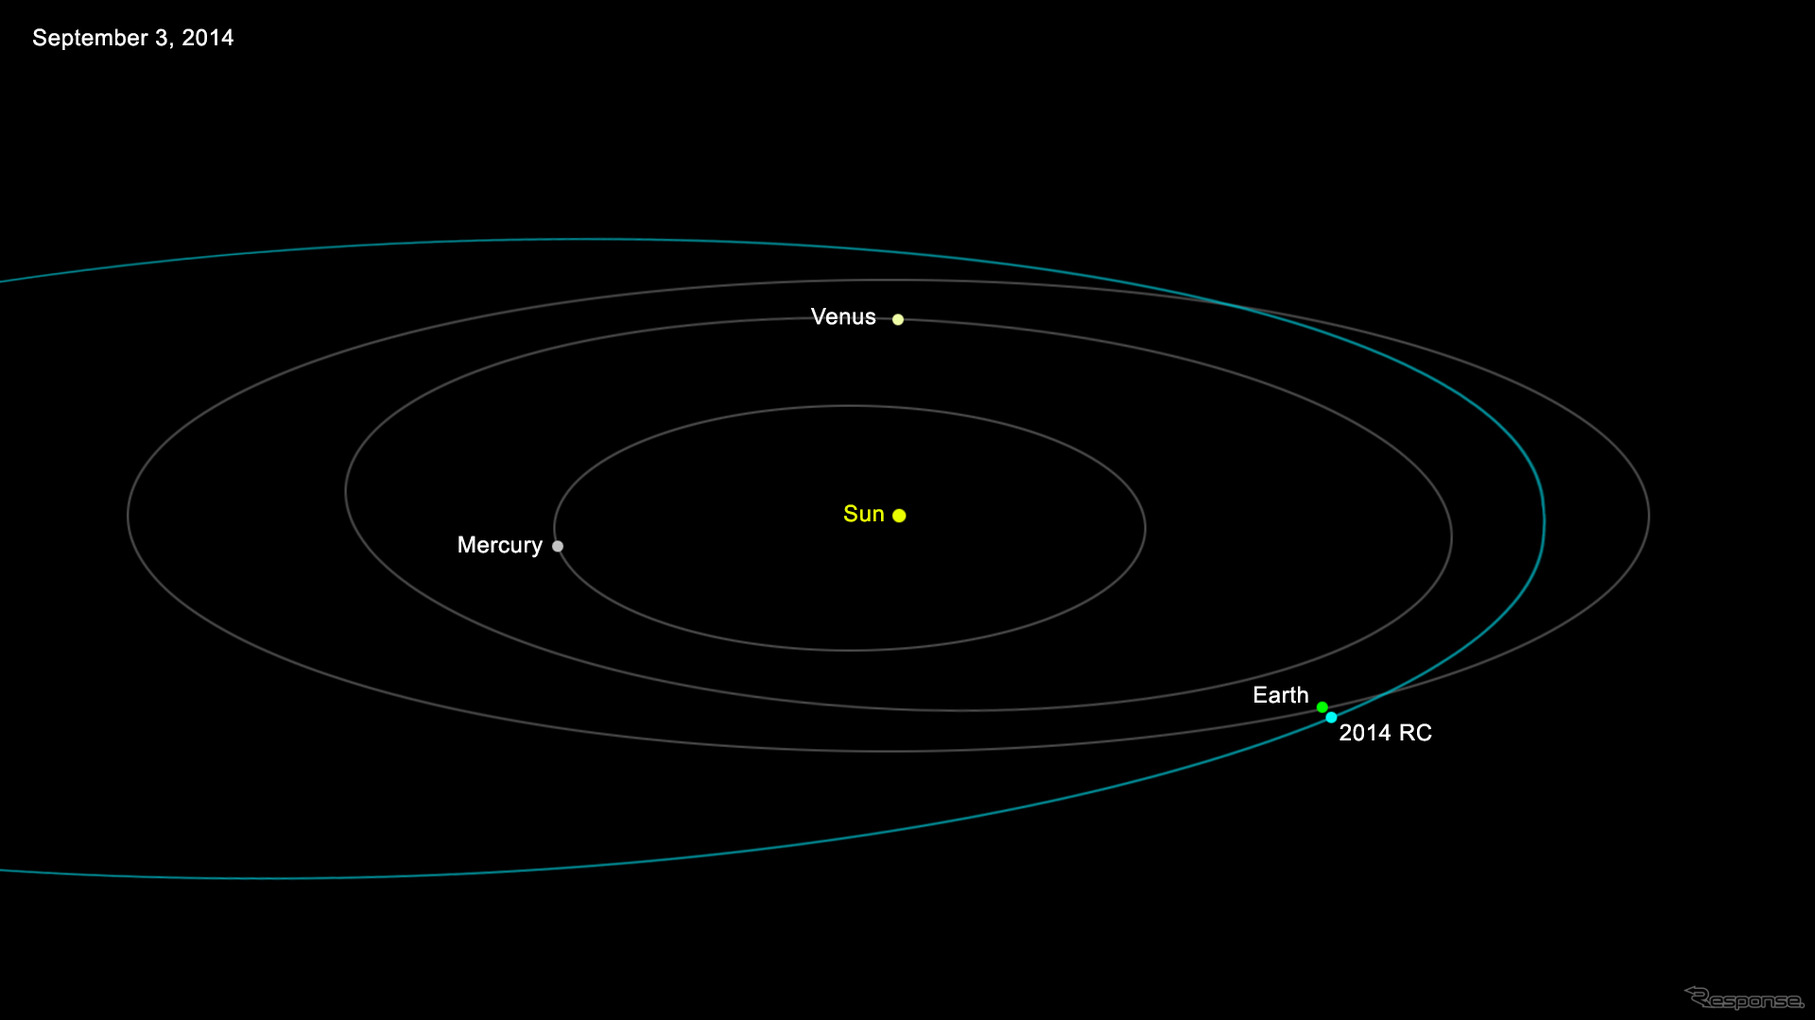 太陽を中心とした小惑星2014 RCの軌道。長い軌道長半径を持ち、地球の軌道を横切る。